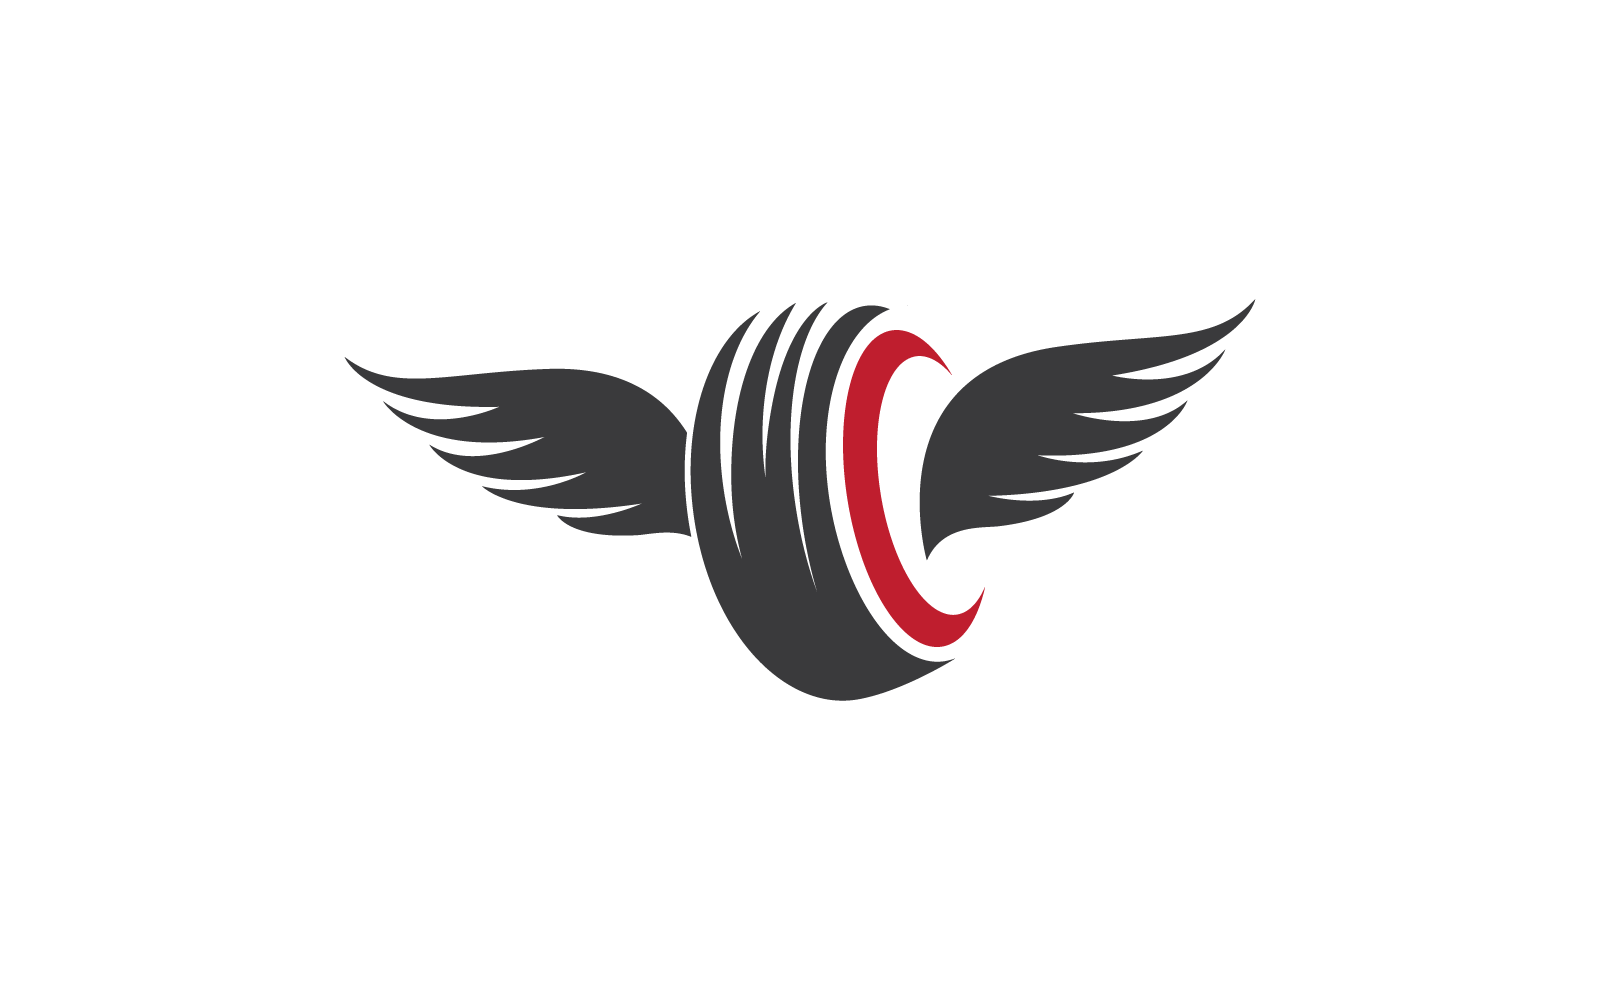 Vektor-Logo-Vorlage für Reifen und Flügelillustration